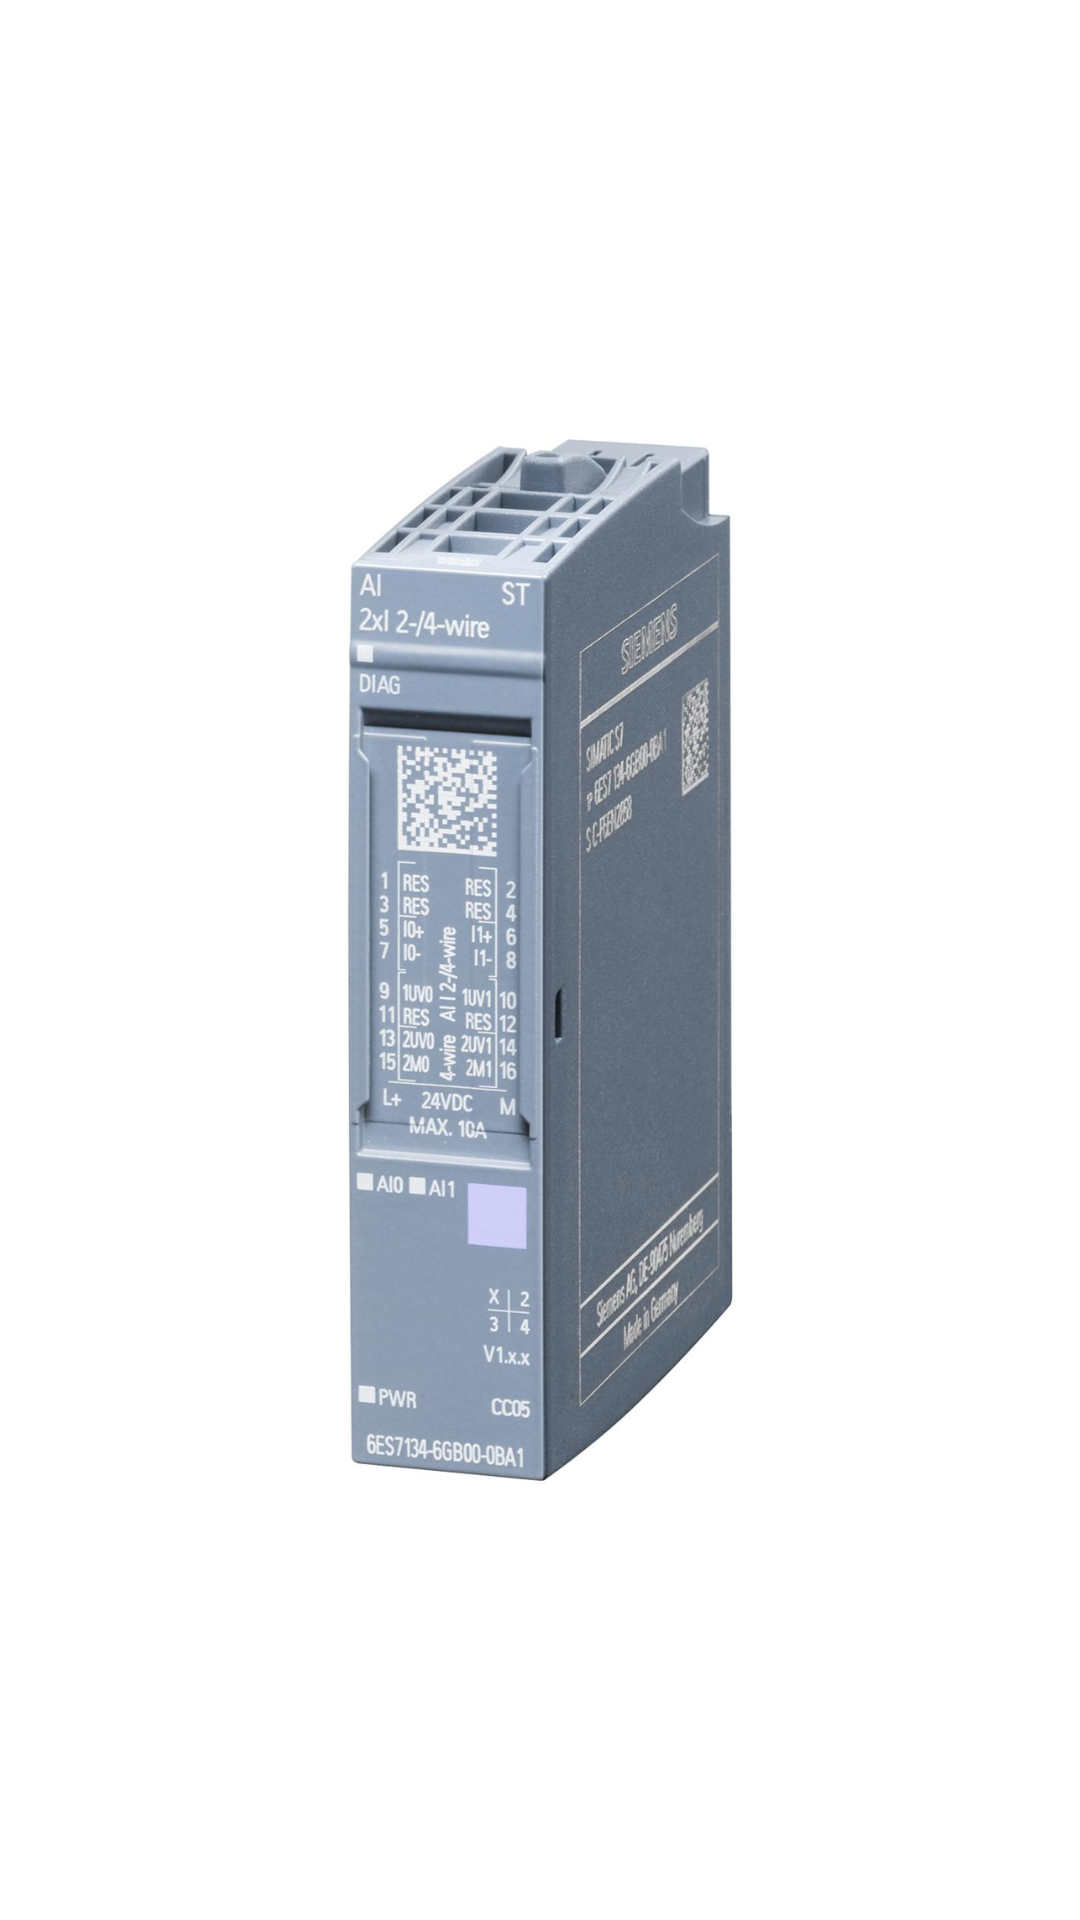 6ES7134-6GB00-0BA1 Siemens SIMATIC ET 200SP, módulo de entrada analógica, padrão AI 2xI 2/4 fios, quantidade por embalagem: 1 unidade, adequado para BU tipo A0, A1, código de cores CC05, diagnóstico do módulo, 16 bits